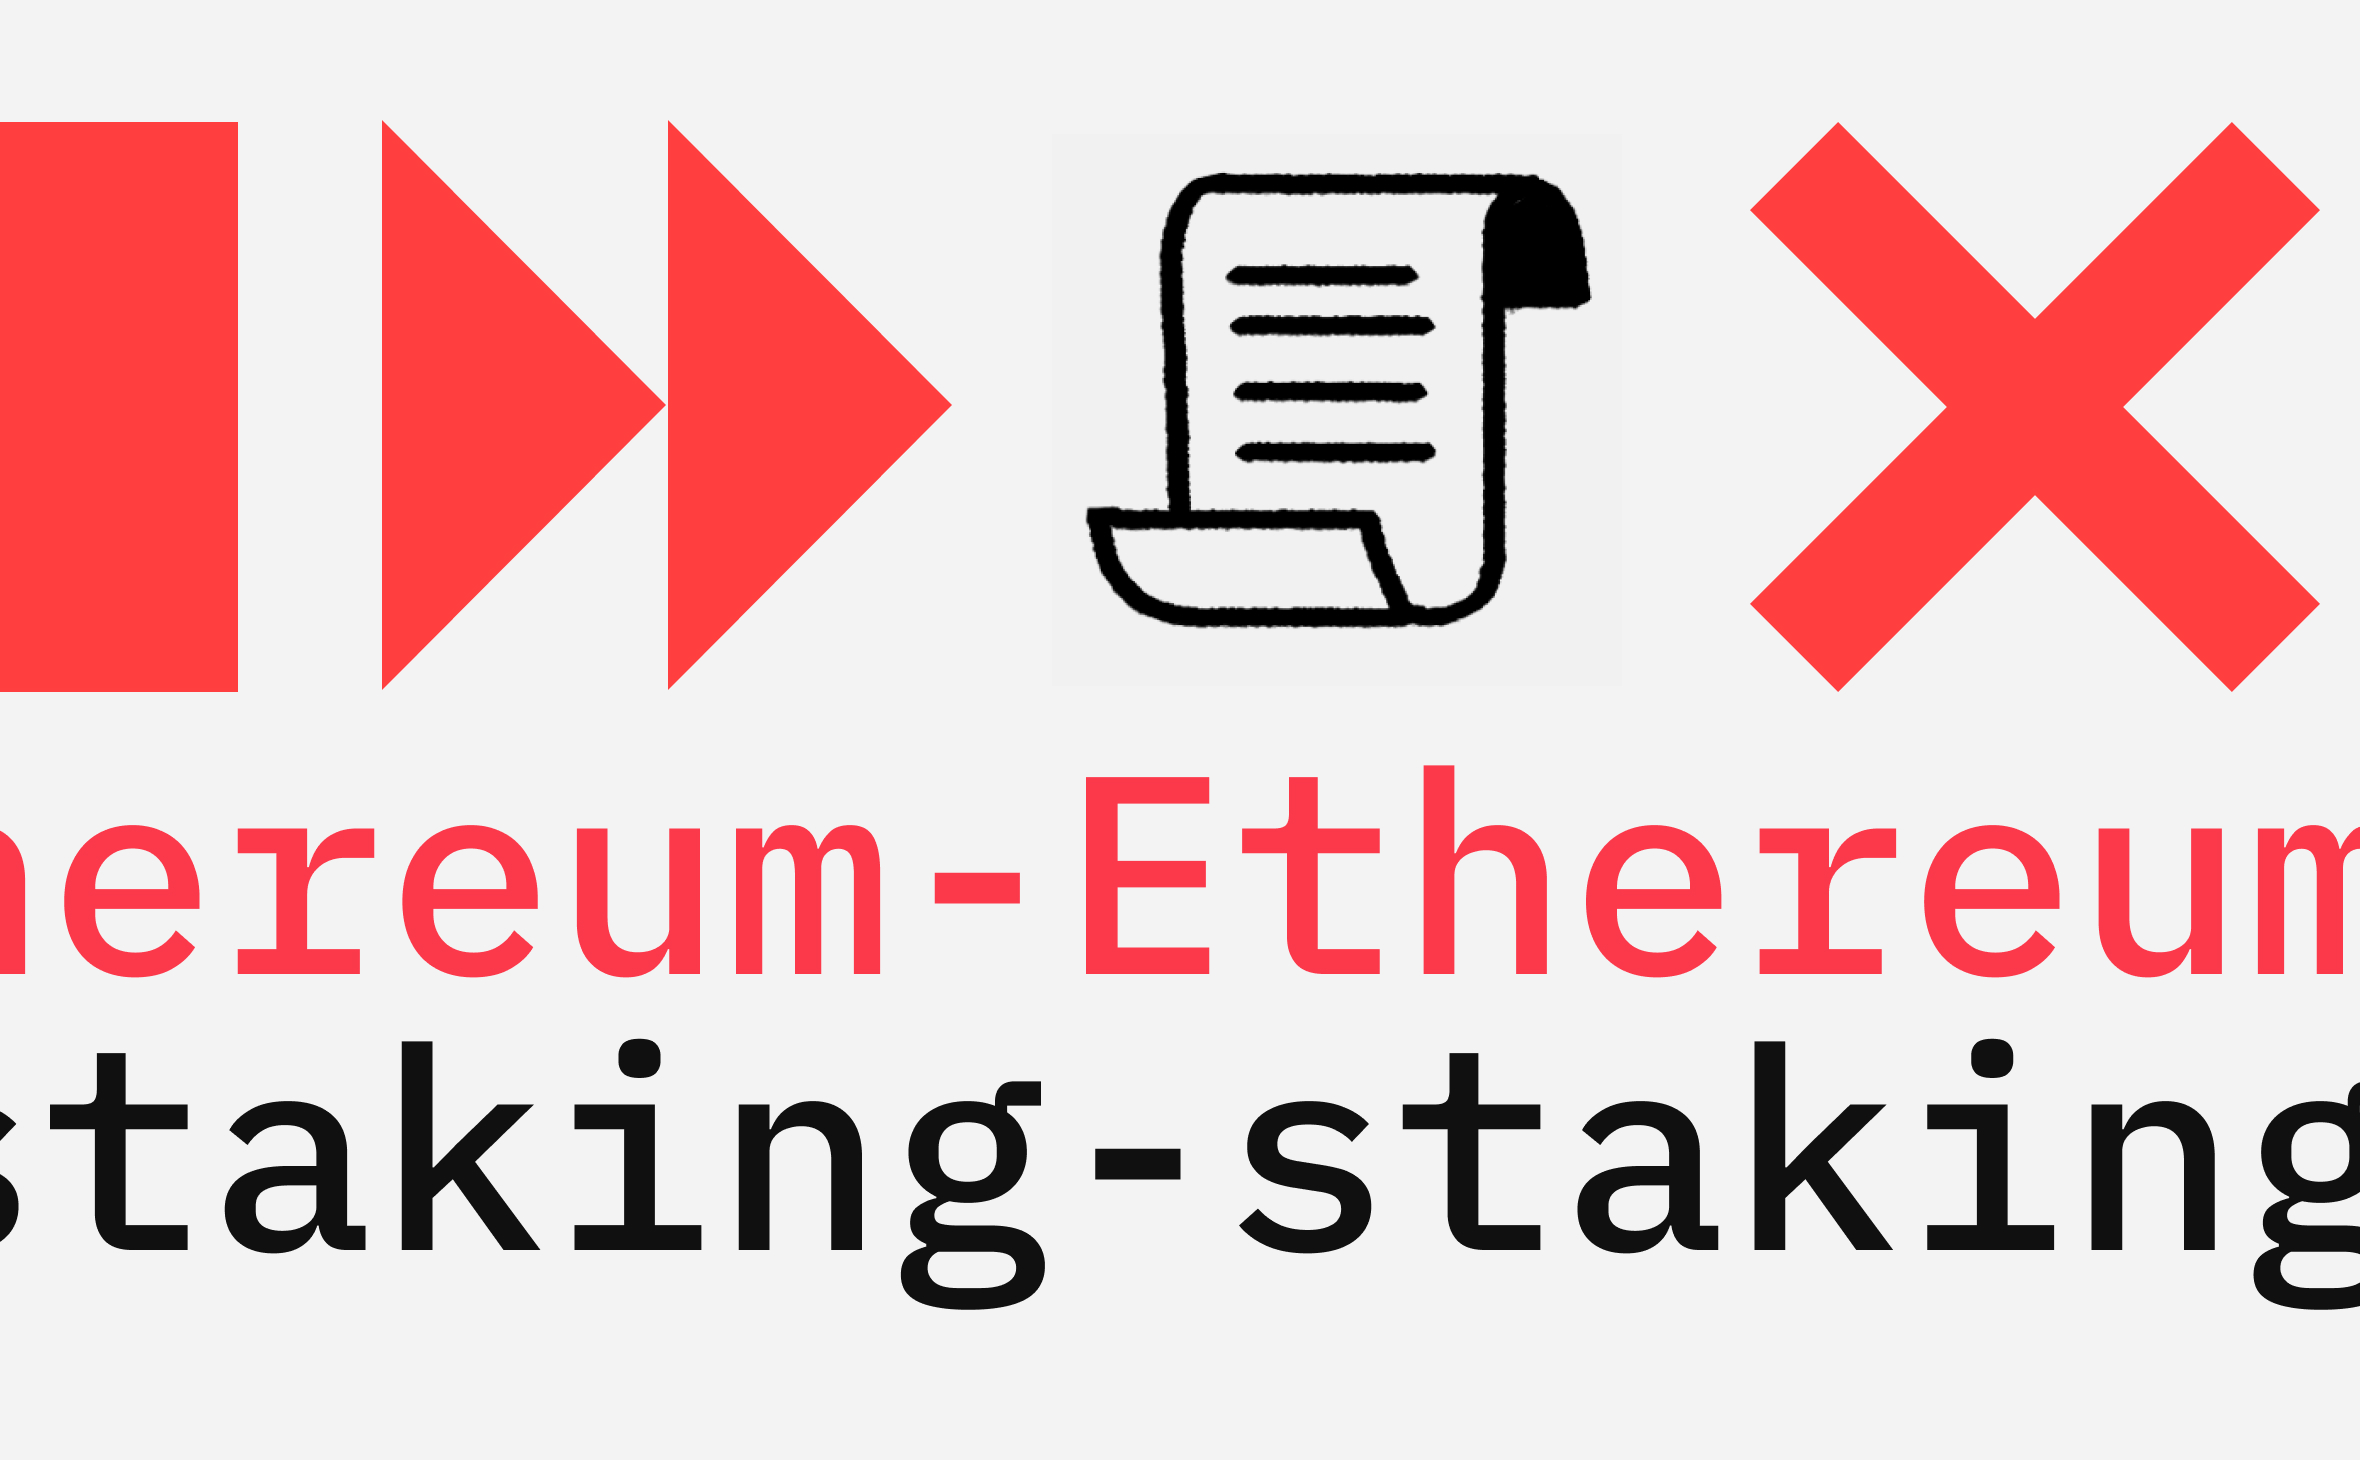 Претенденты на запуск Ethereum-ETF исключили стейкинг. Почему это важно